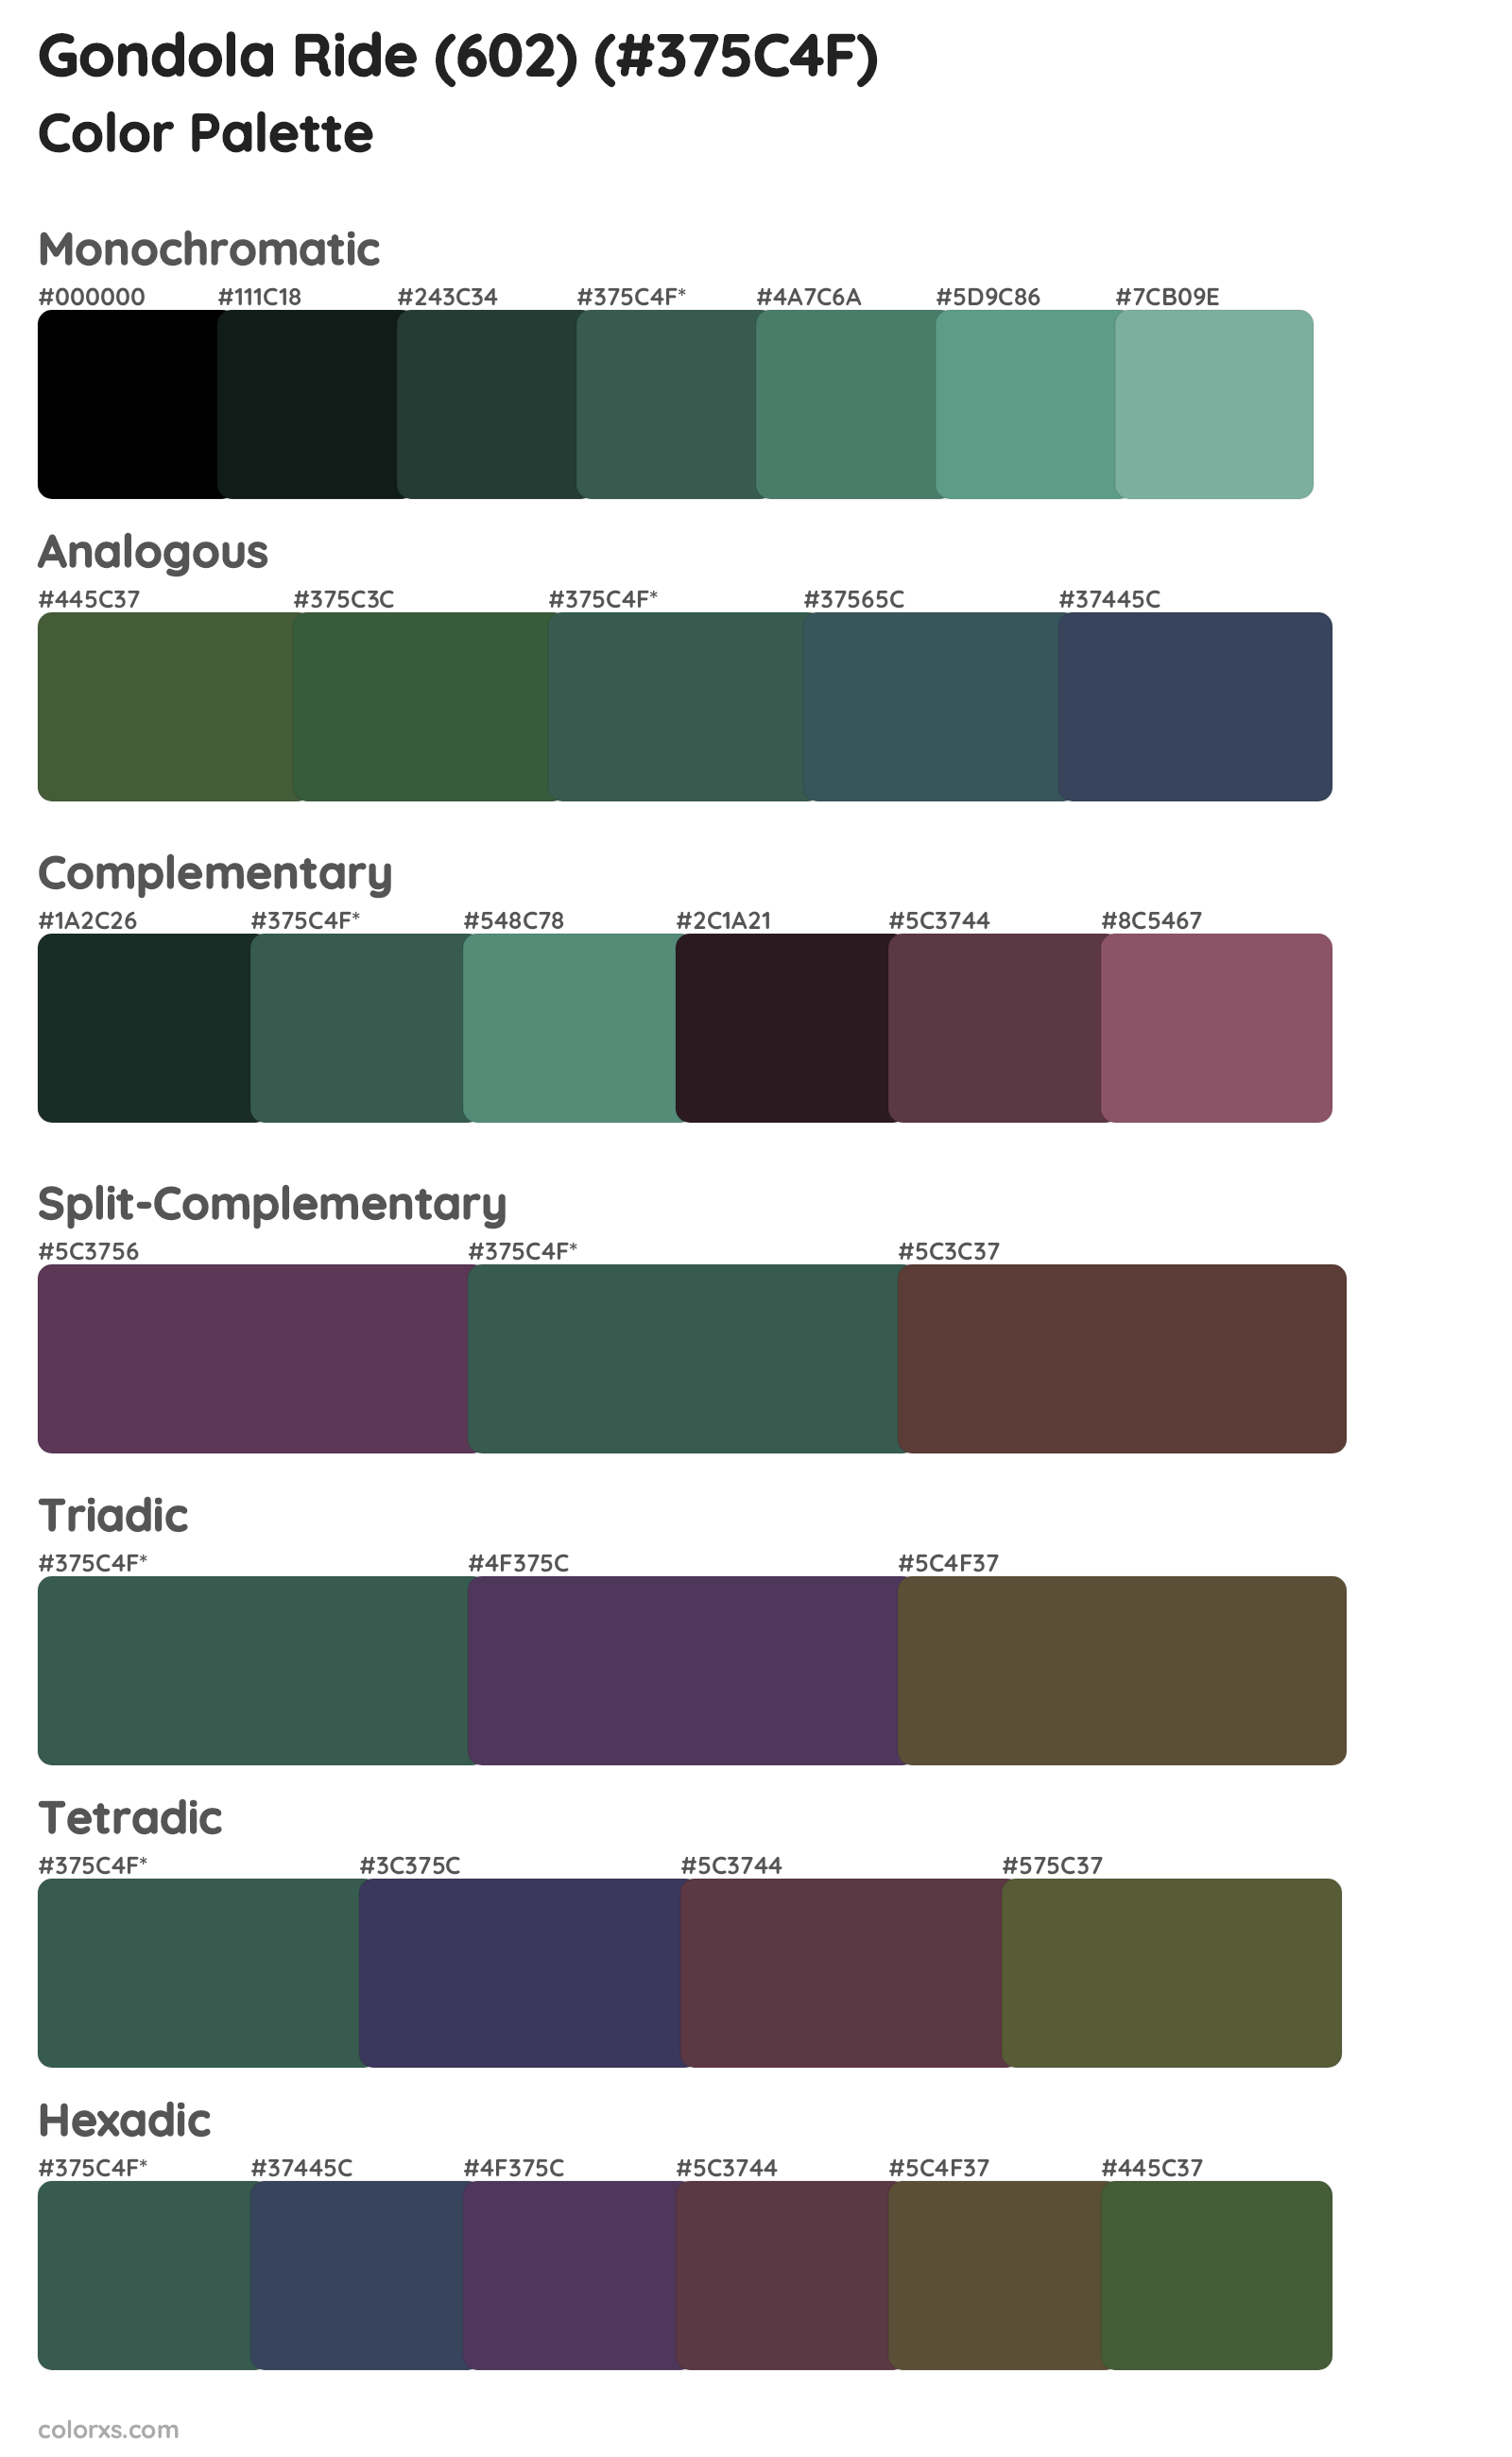 Gondola Ride (602) Color Scheme Palettes